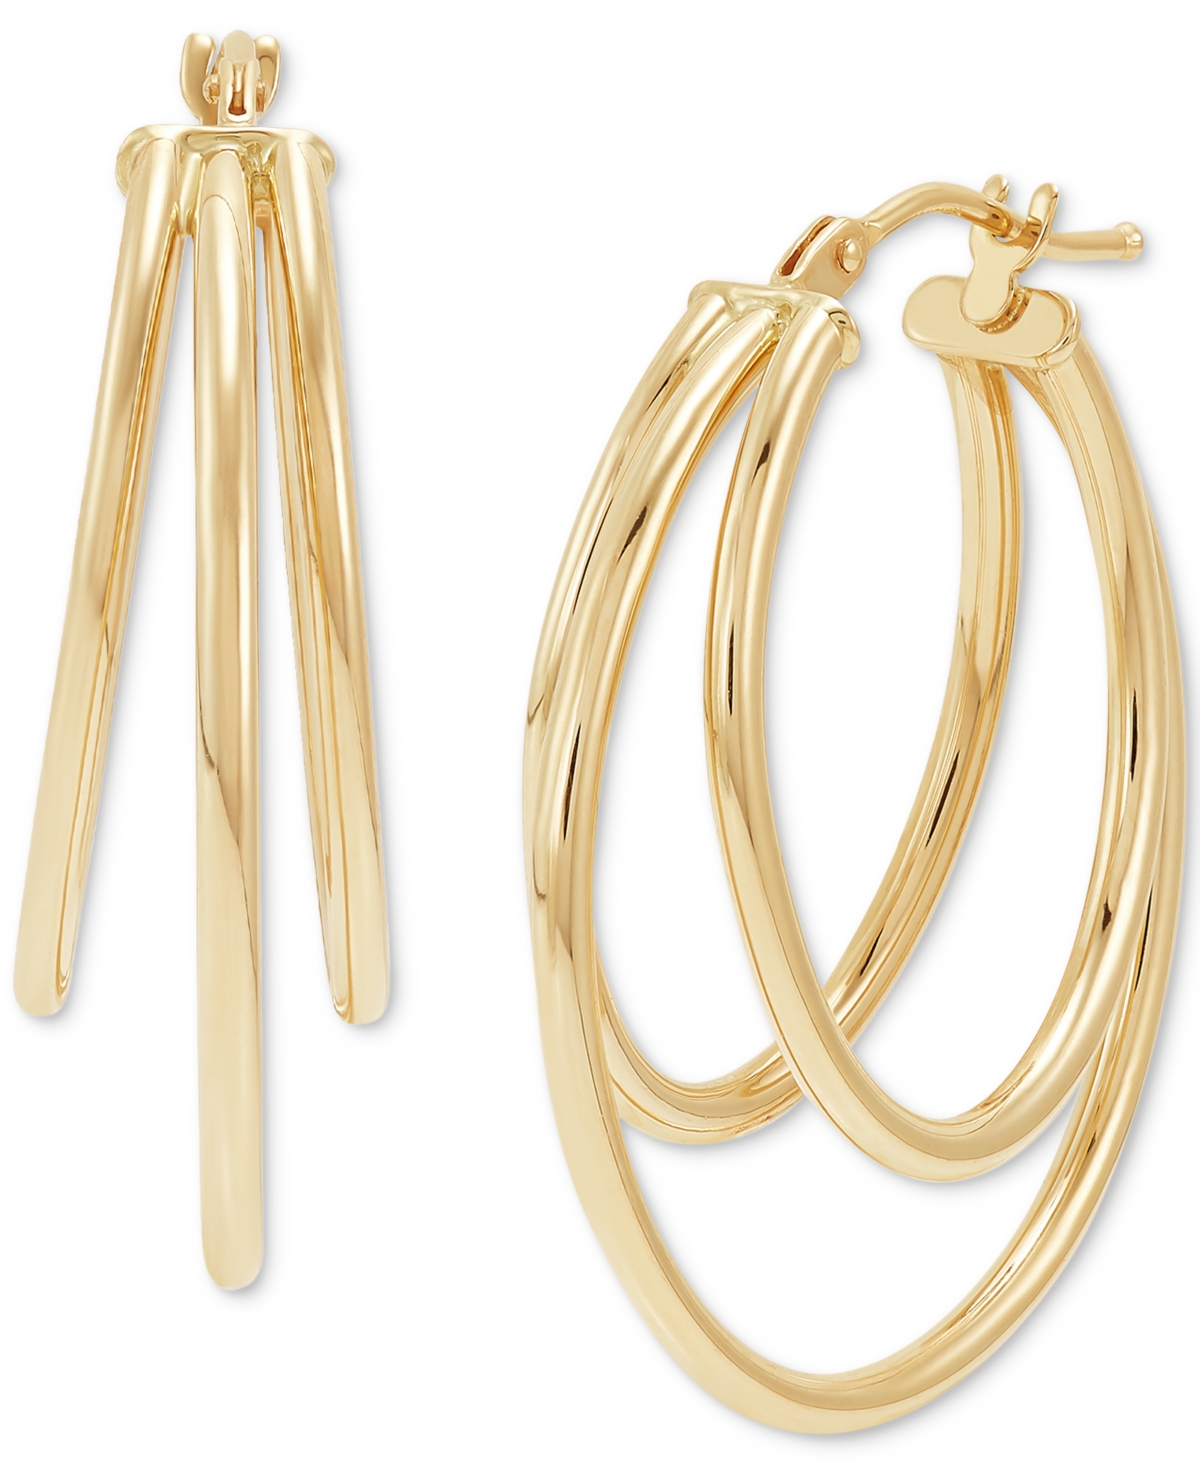 Italian Gold Graduated Small Triple Split Hoop Earrings In 10k Gold